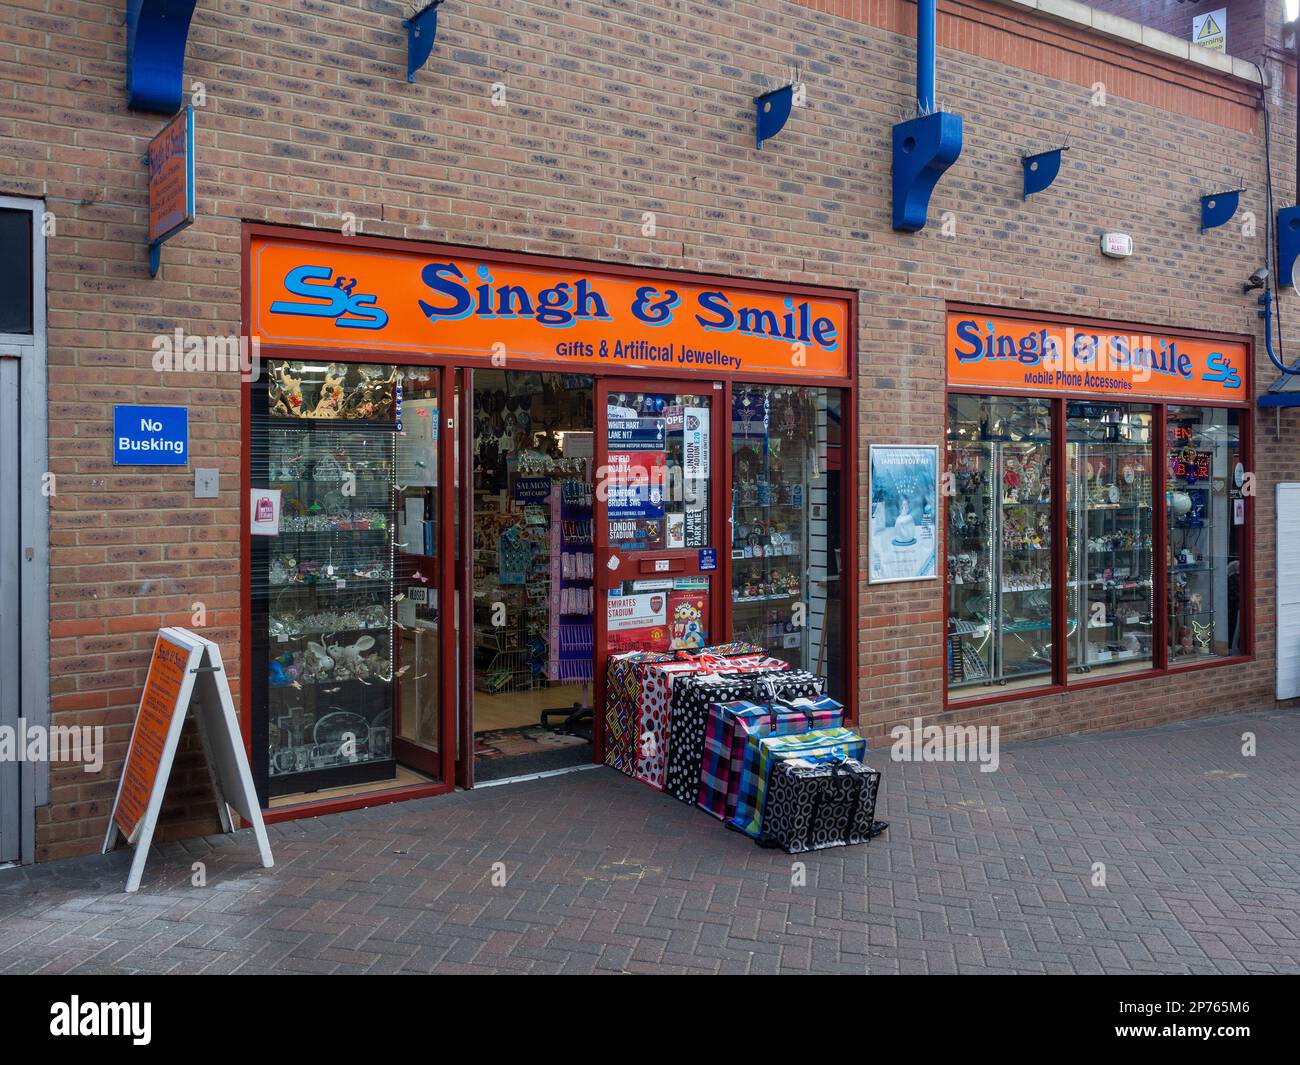 Singh & Lächeln, eine witzige Namen für ein Geschäft, in dem Sie Geschenke  und künstlichen Schmuck, Northampton, Großbritannien Stockfotografie - Alamy